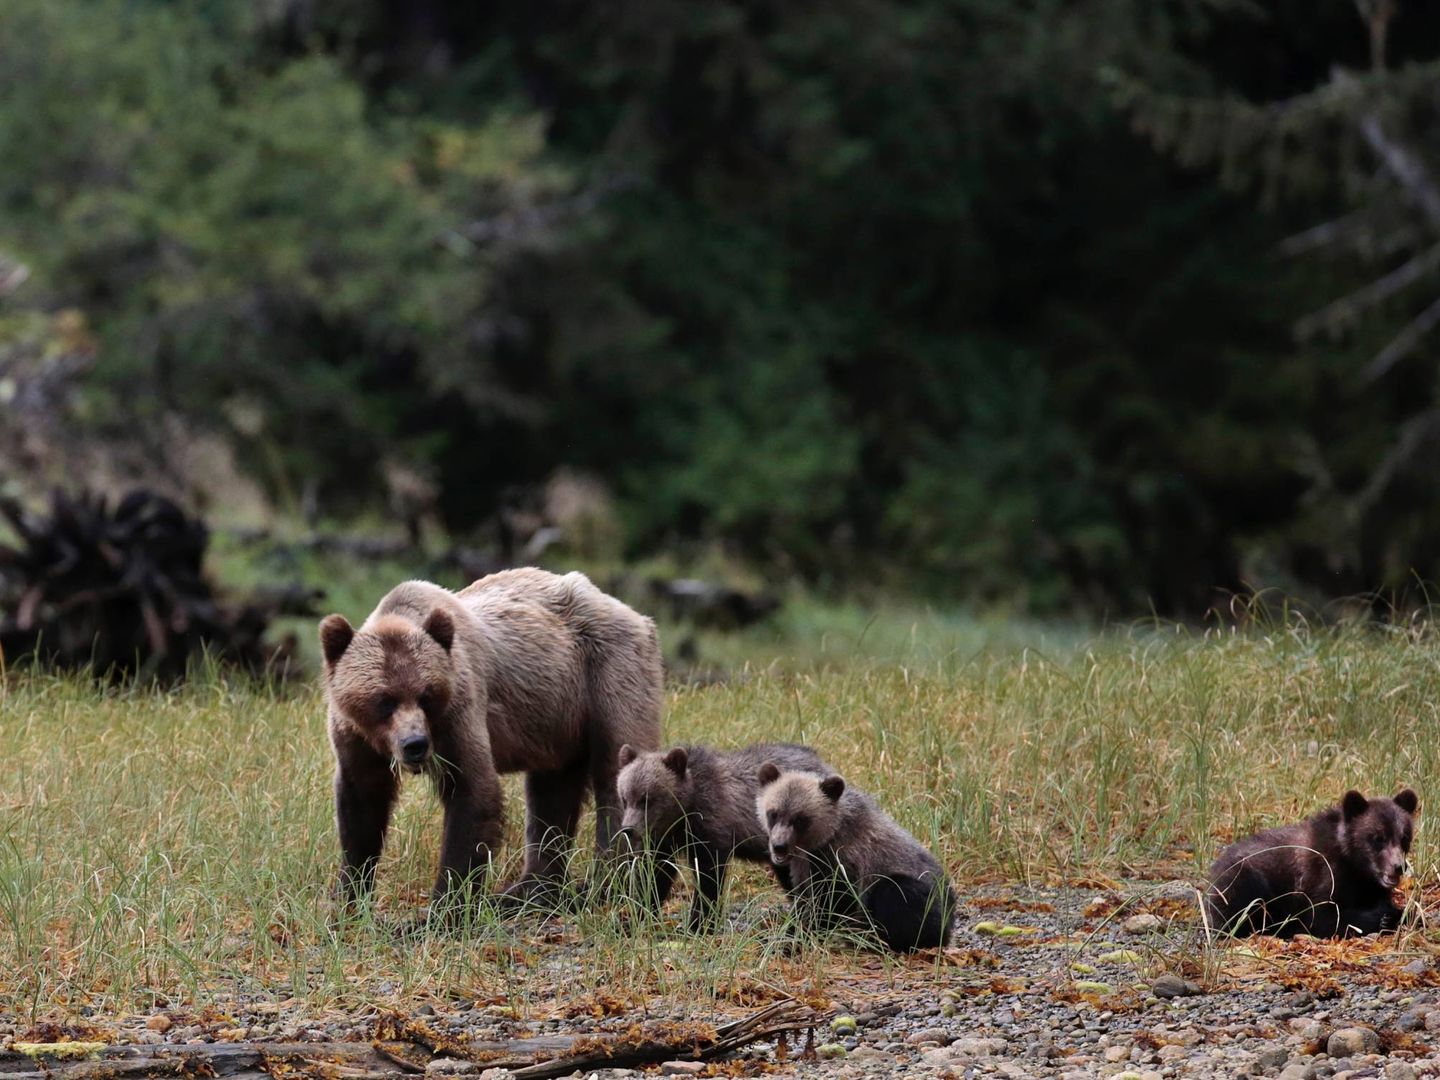 'Espíritu salvaje' viajó hasta Canadá en su segunda entrega, en busca del oso grizzly. (Mediaset)